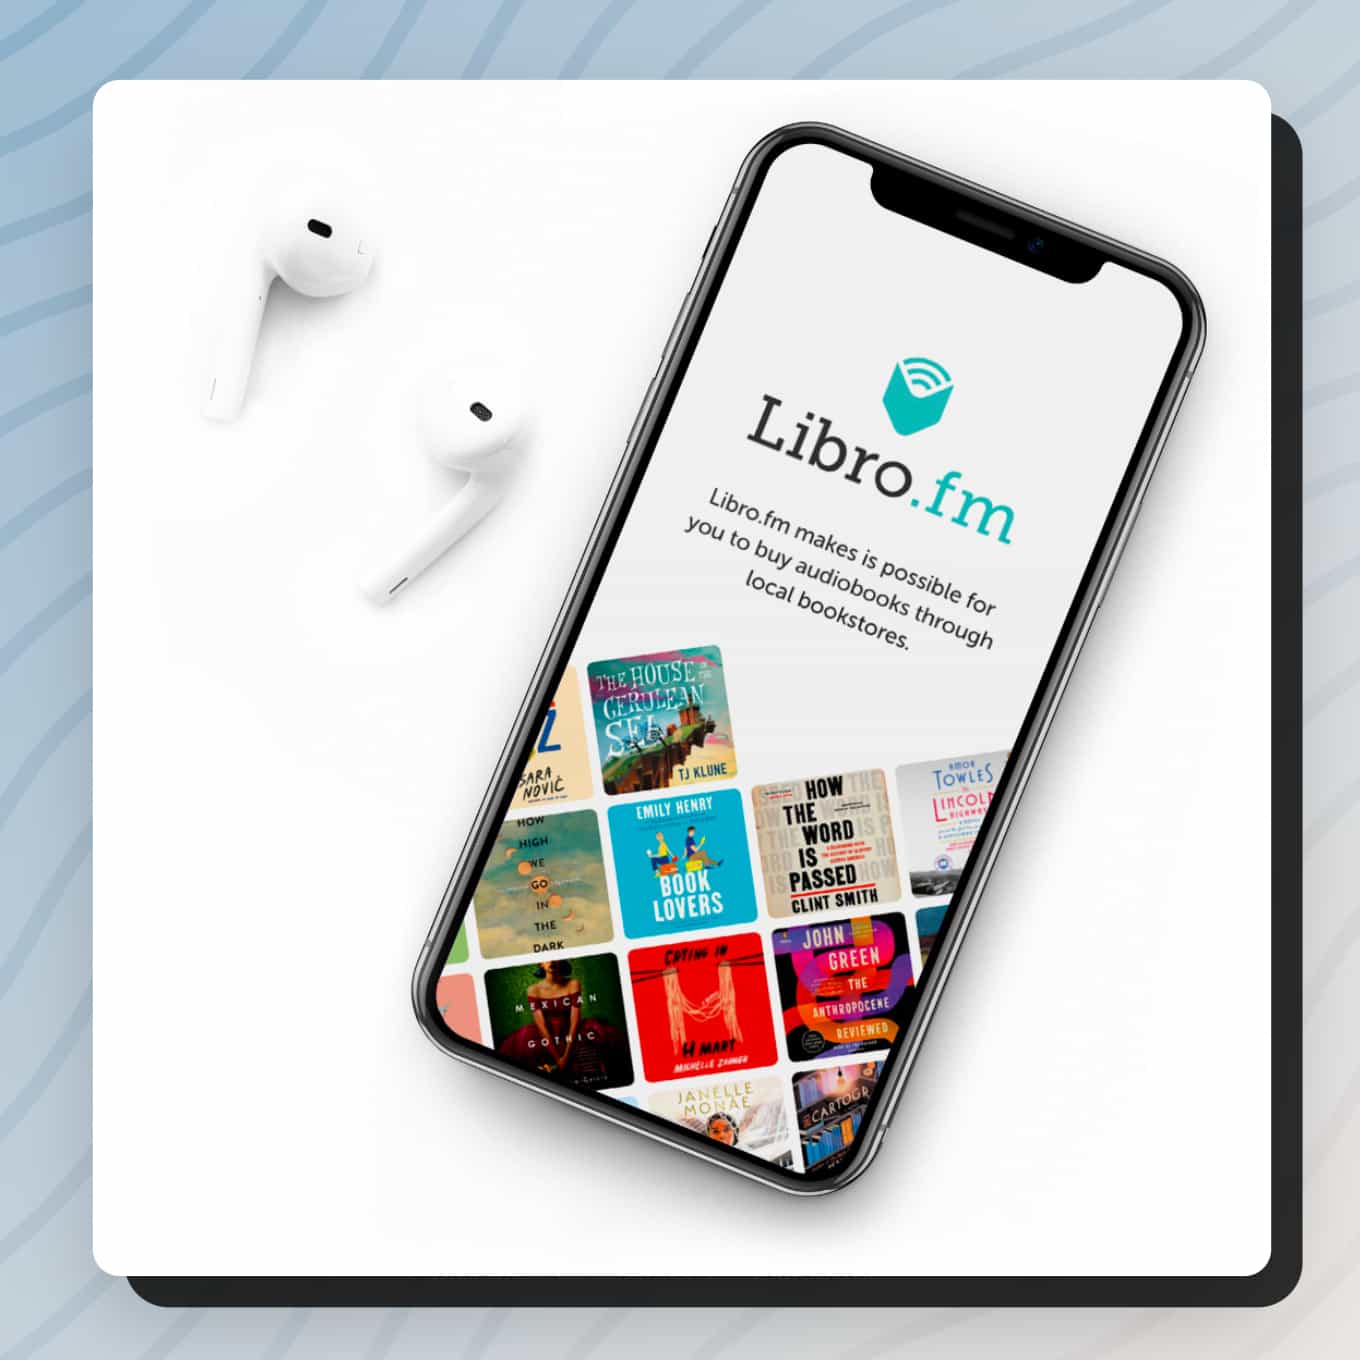 Libro.fm audioboek-app op een telefoon